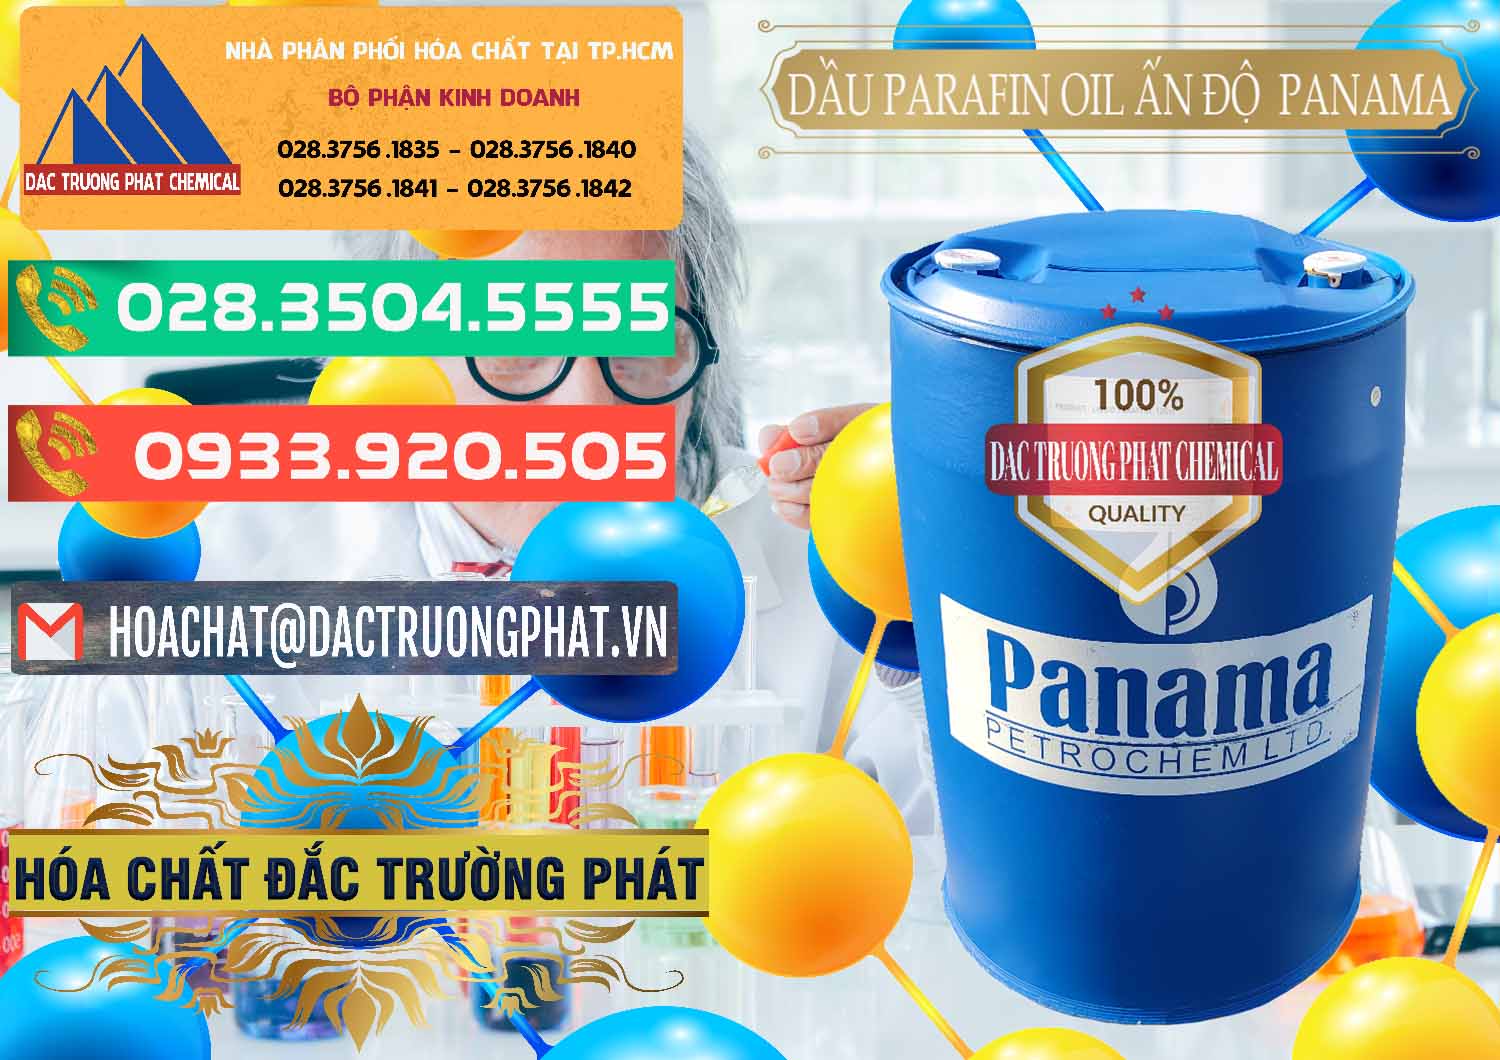 Nơi chuyên bán ( cung cấp ) Dầu Parafin Oil Panama Ấn Độ India - 0061 - Chuyên phân phối ( bán ) hóa chất tại TP.HCM - congtyhoachat.com.vn